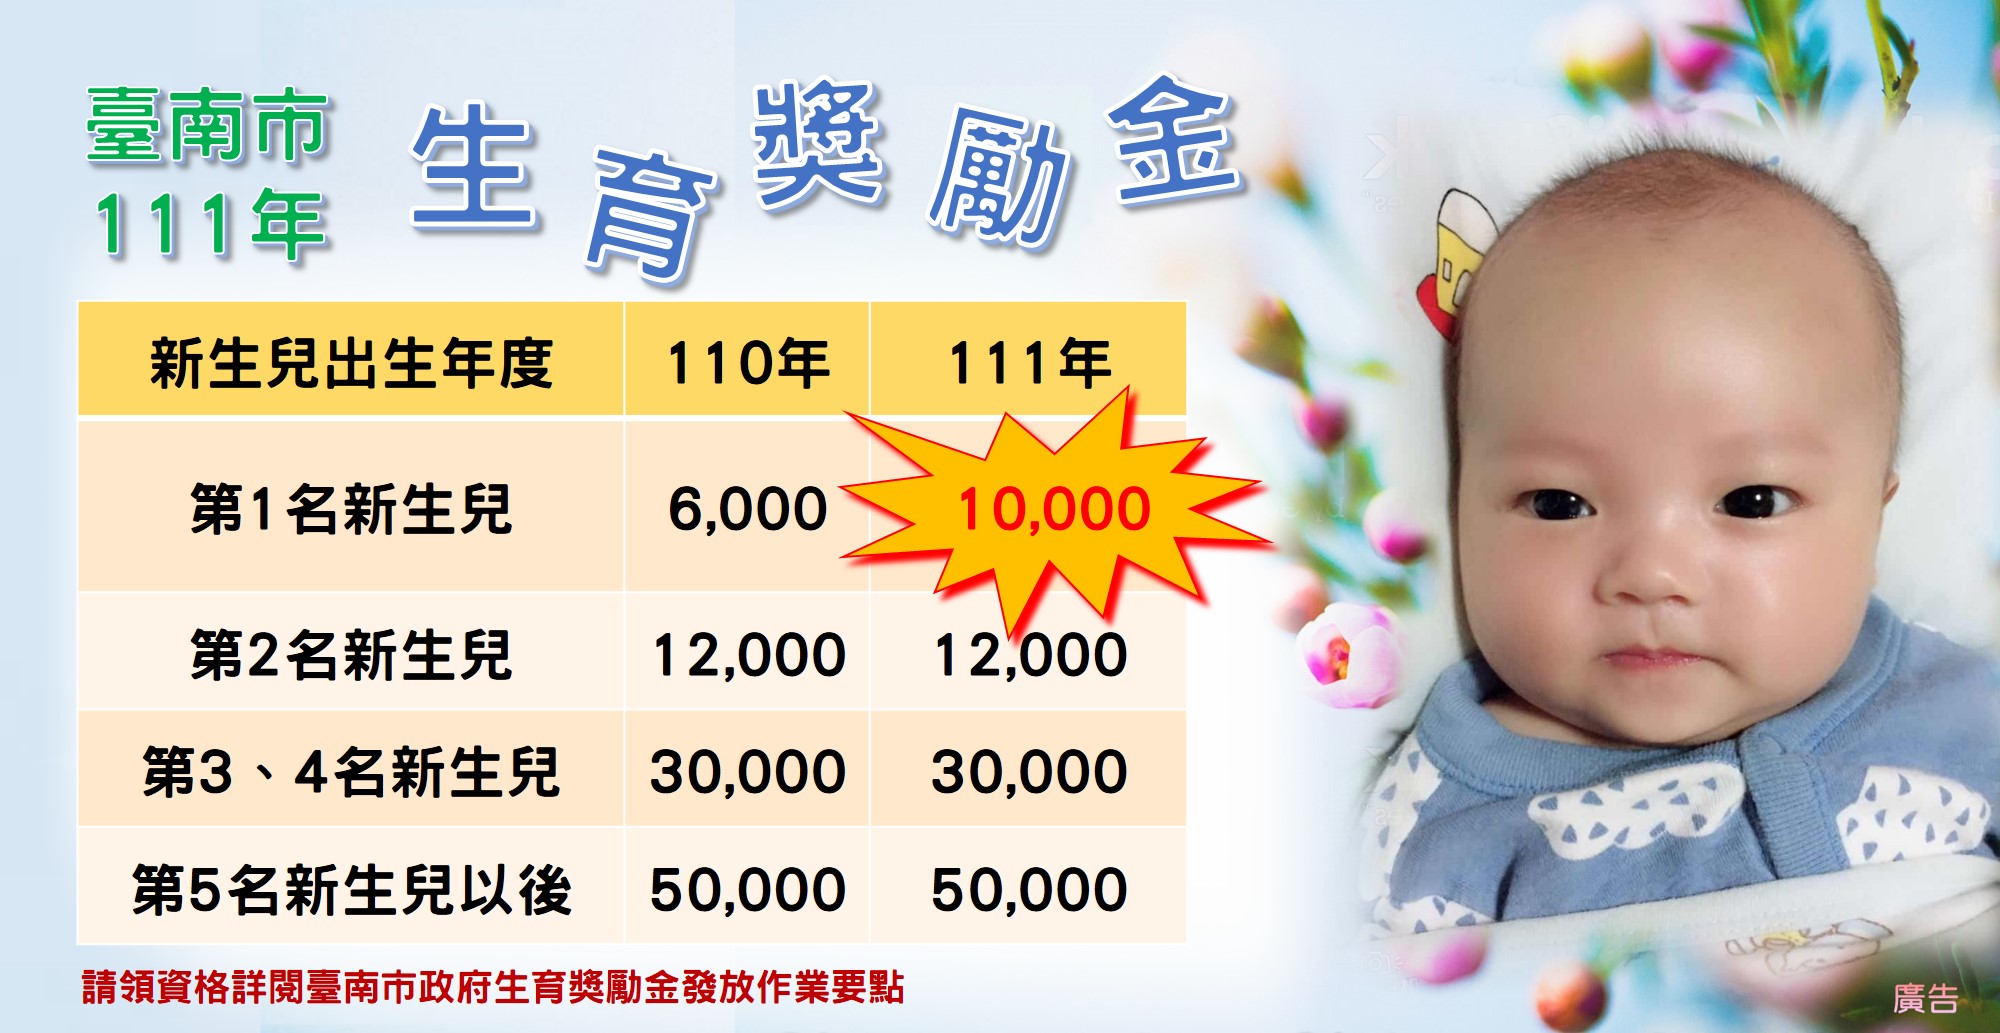 臺南市生育獎勵金說明圖